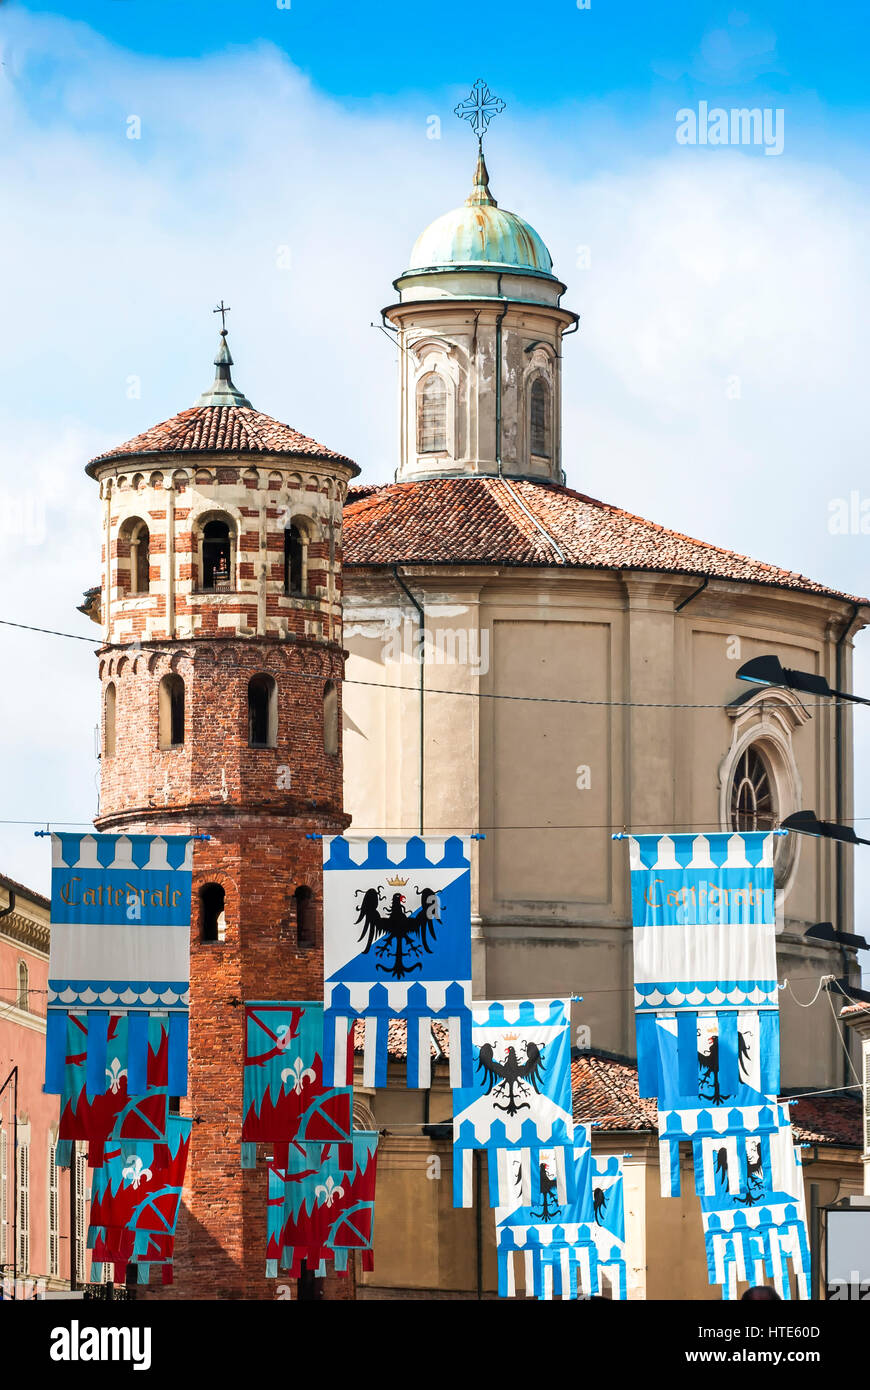 Bandiere colorate decorate edifici medievali prima del Palio, Italia Foto Stock